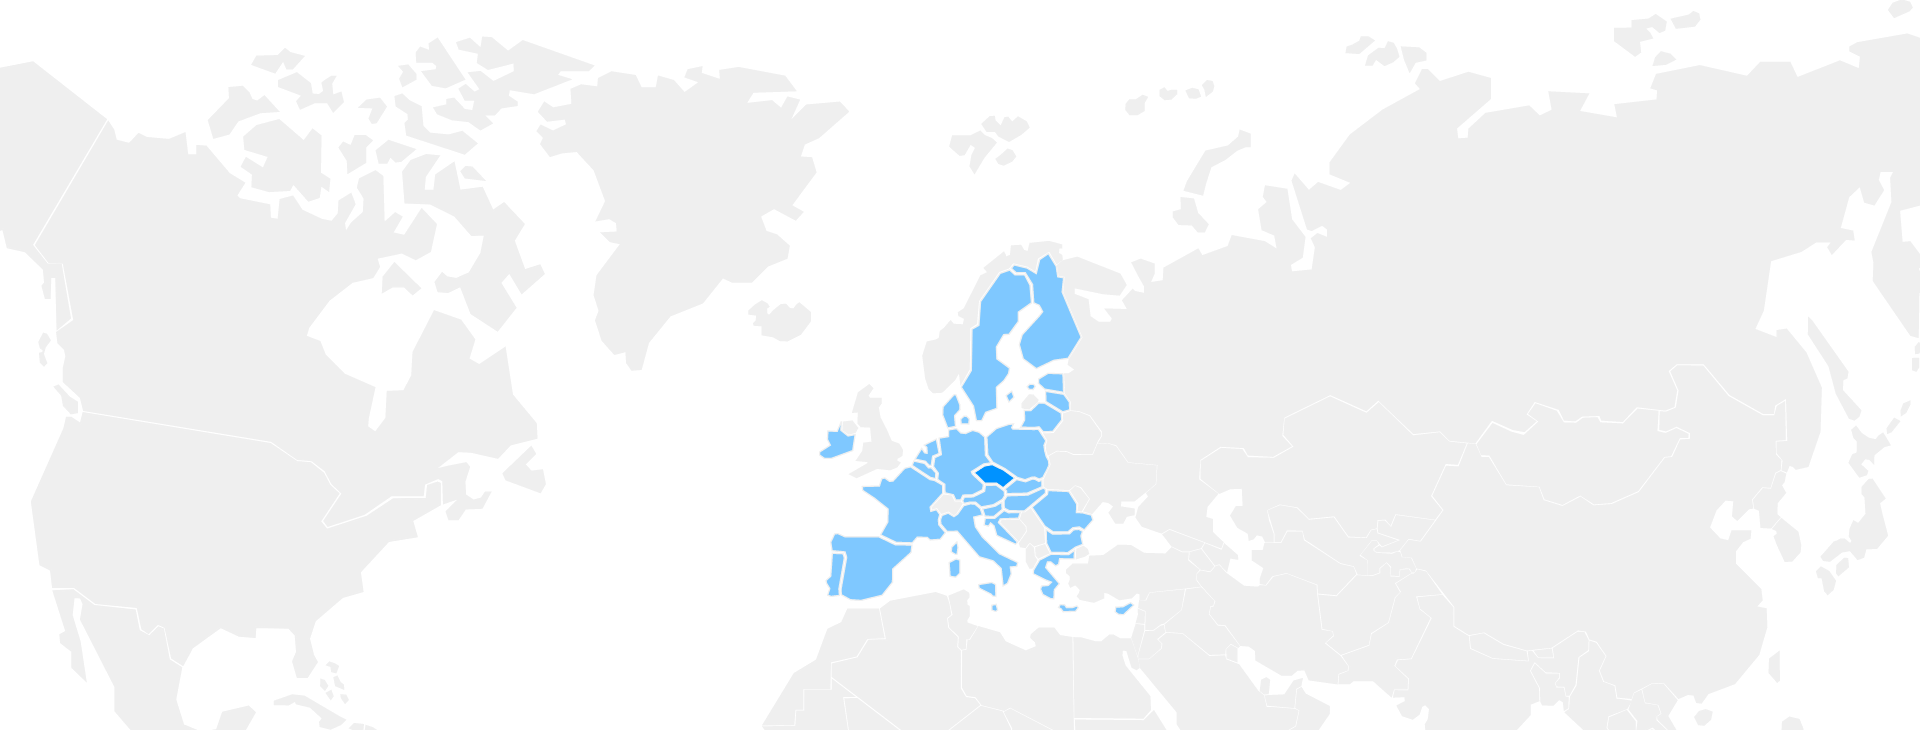 Podpora po celé Evropě